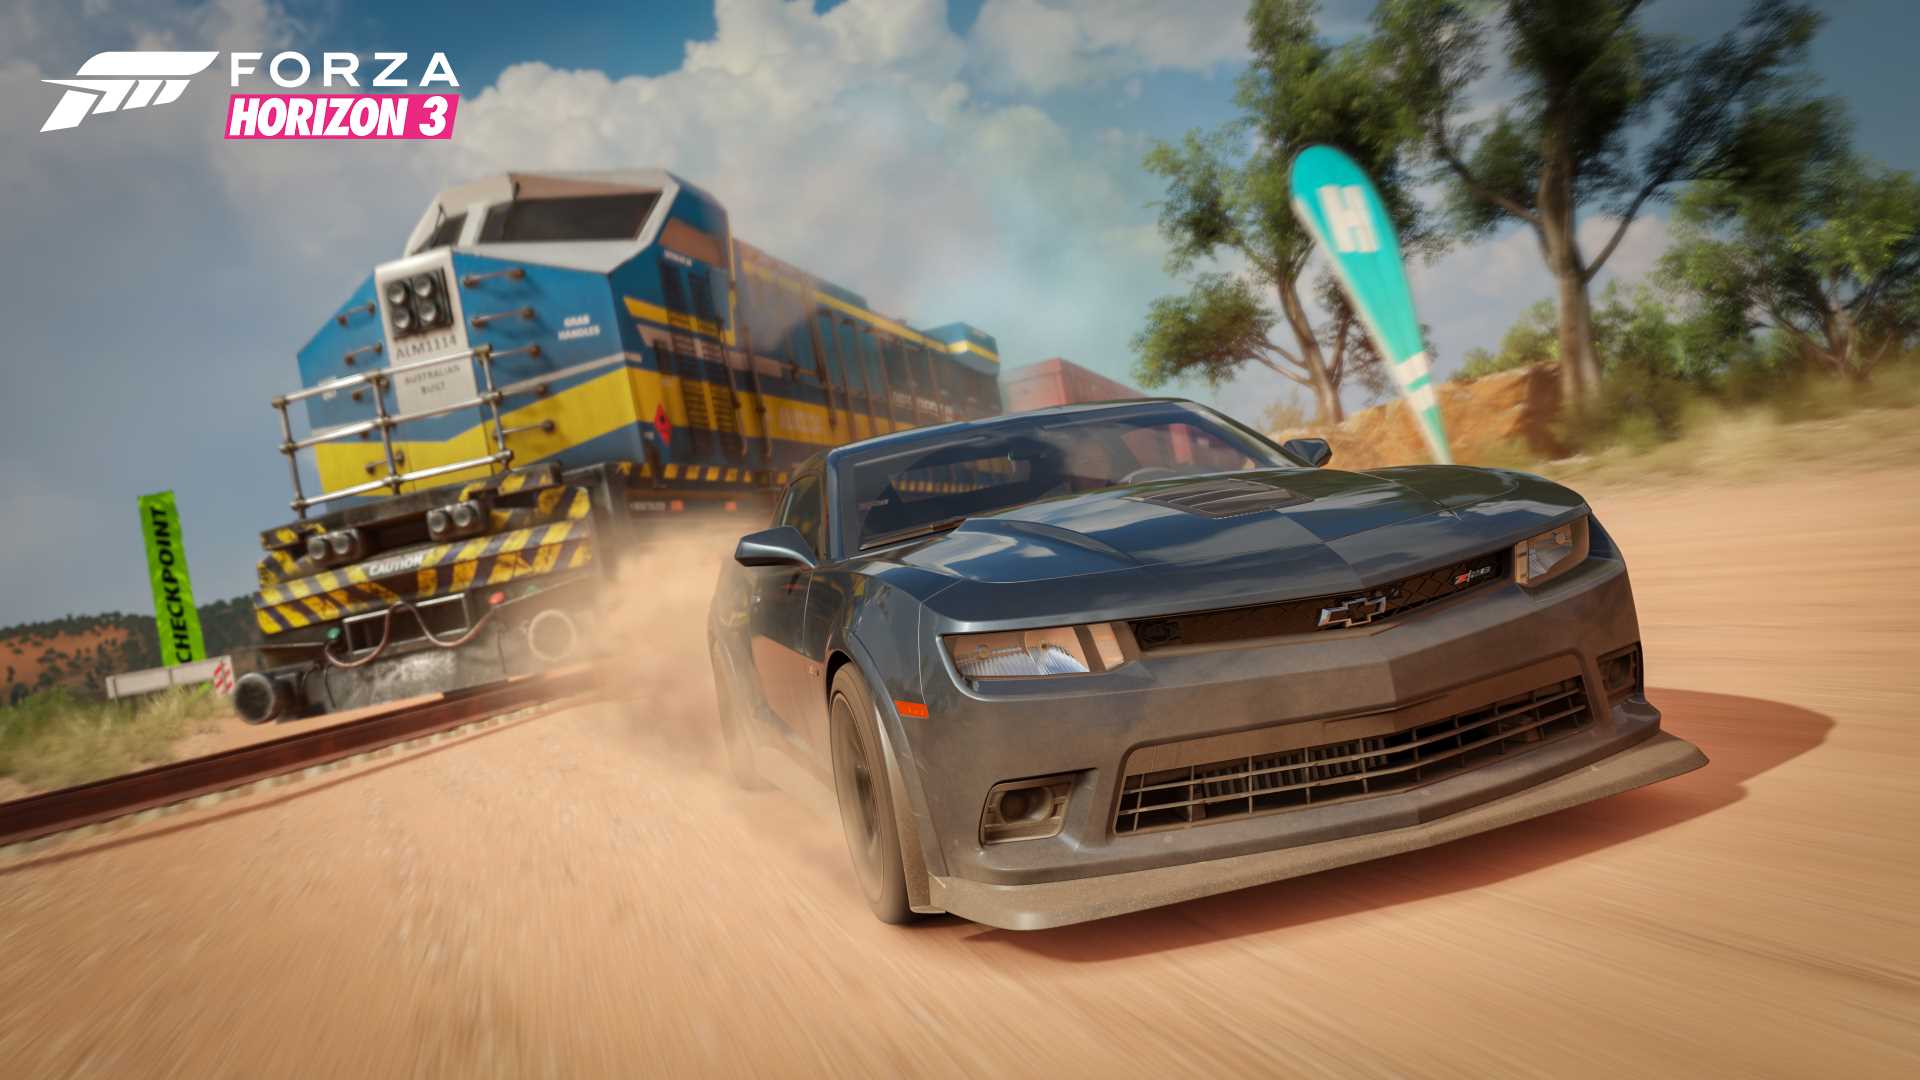 Forza Horizon 3 xbox one review